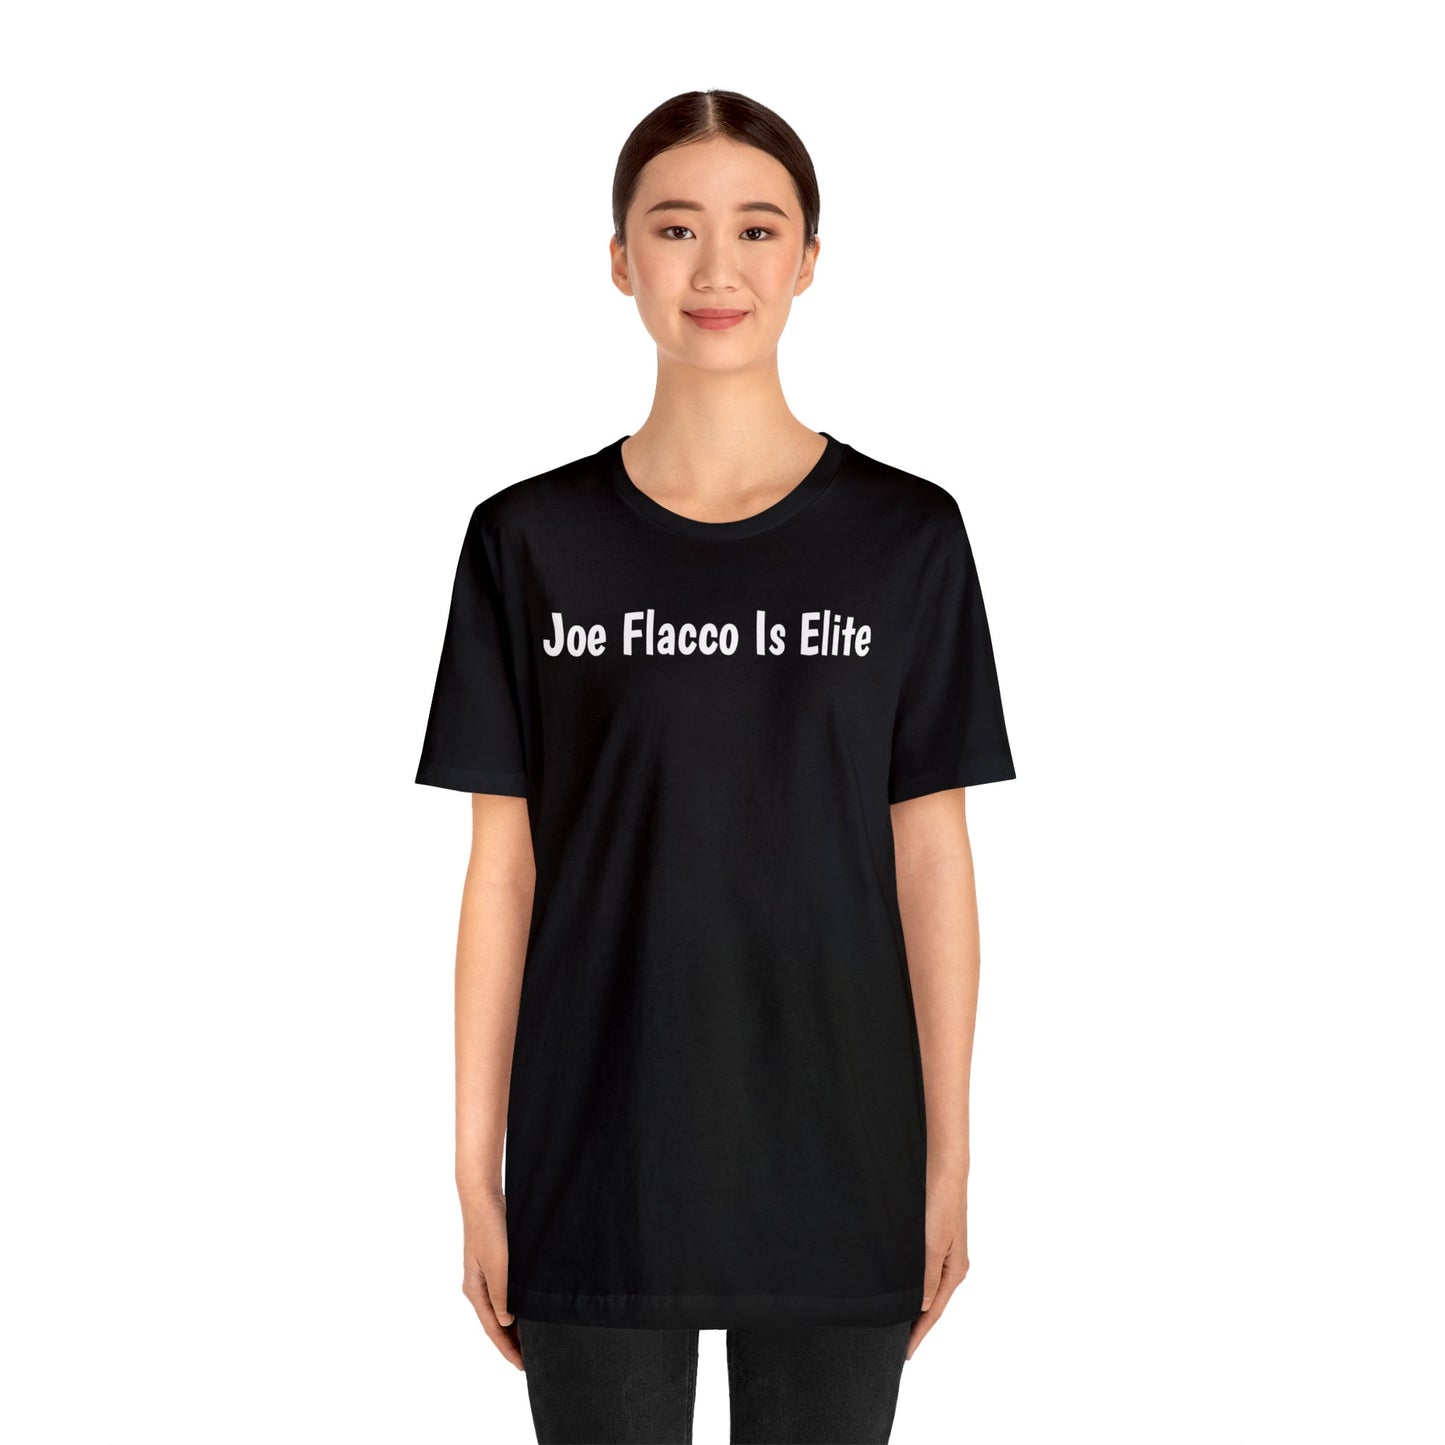 Joe Flacco Is Elite T-Shirt